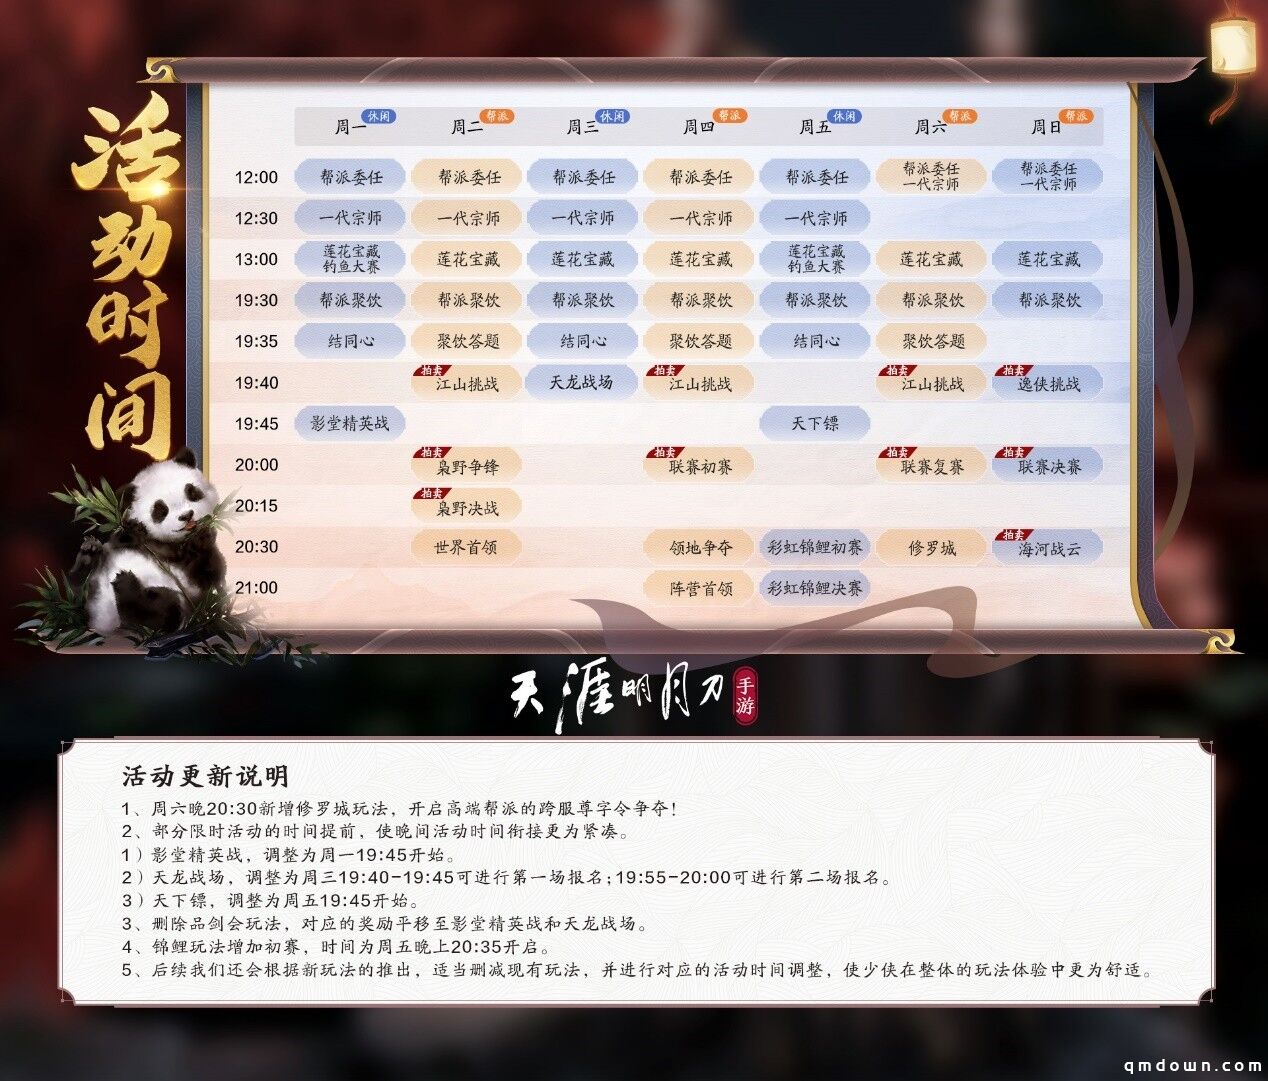 【喜迎IP六周年】天刀手游“天赐节”主题版本5.24上线